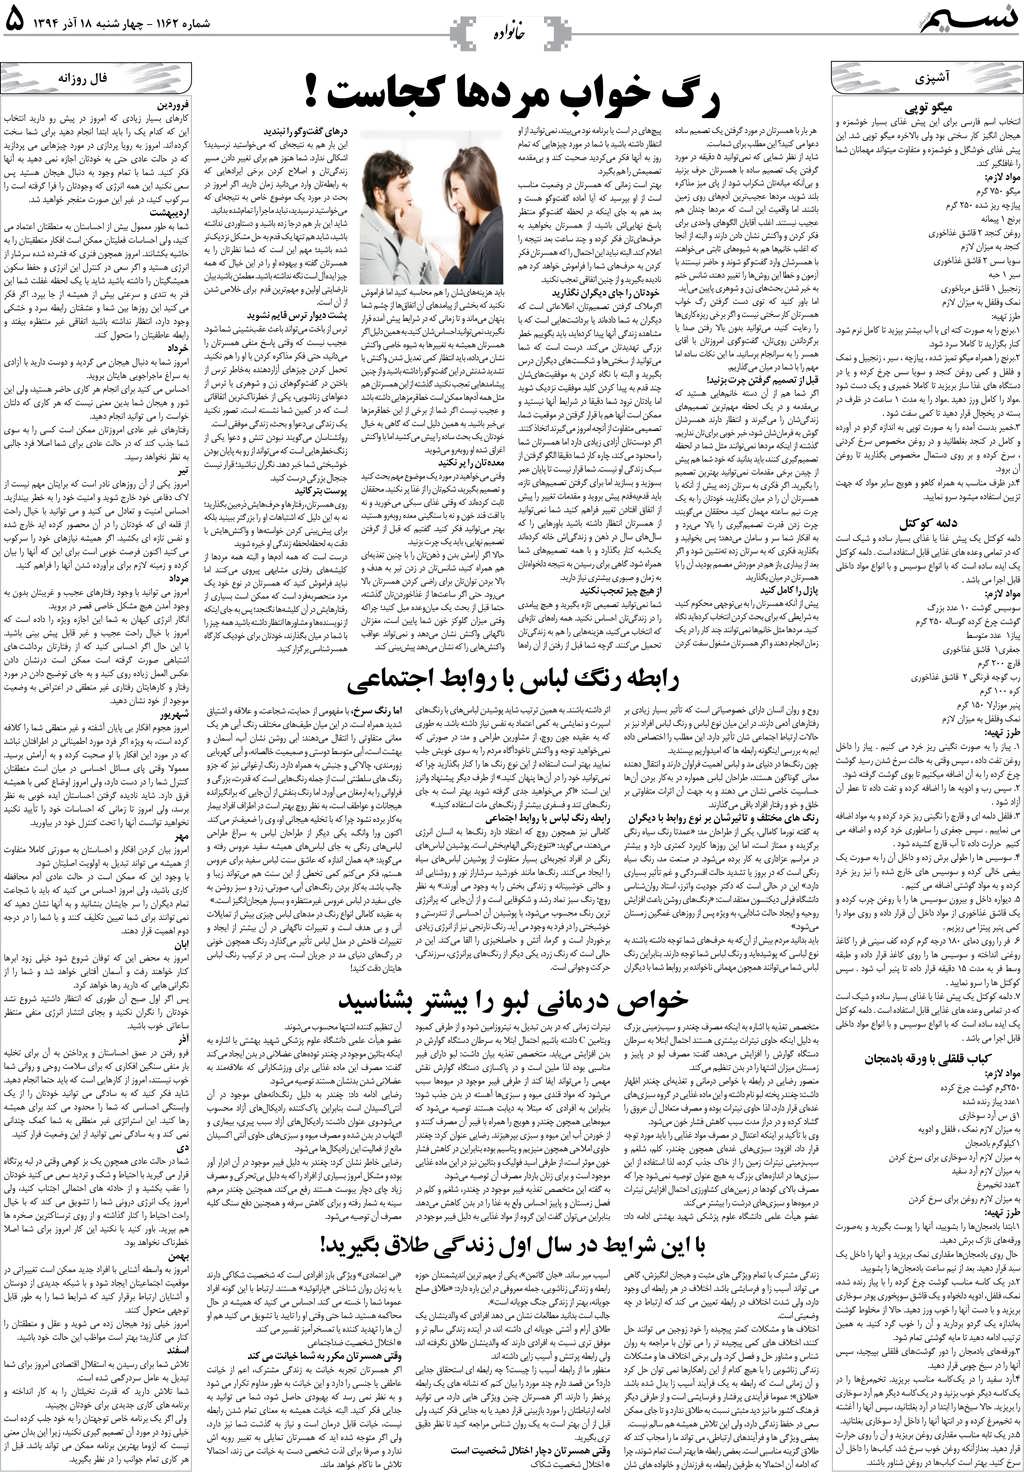 صفحه خانواده روزنامه نسیم شماره 1162